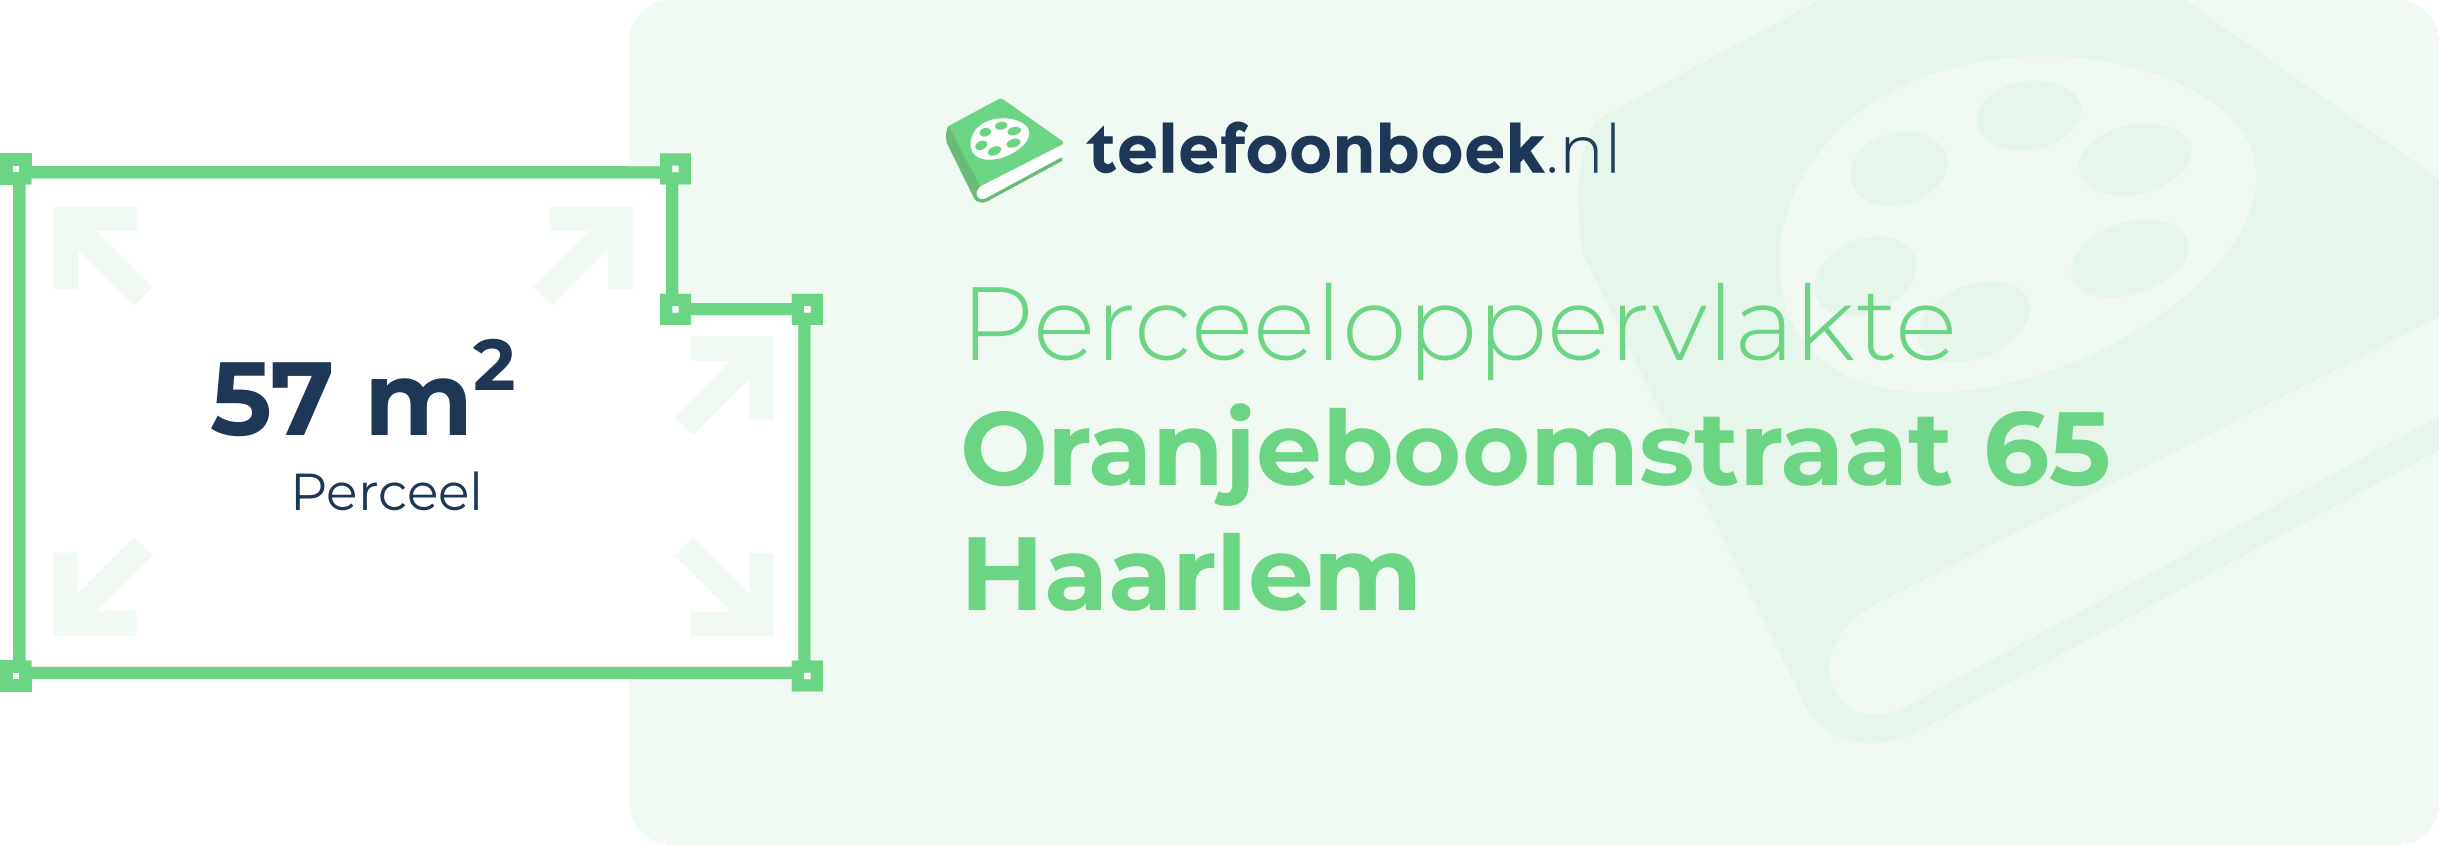 Perceeloppervlakte Oranjeboomstraat 65 Haarlem